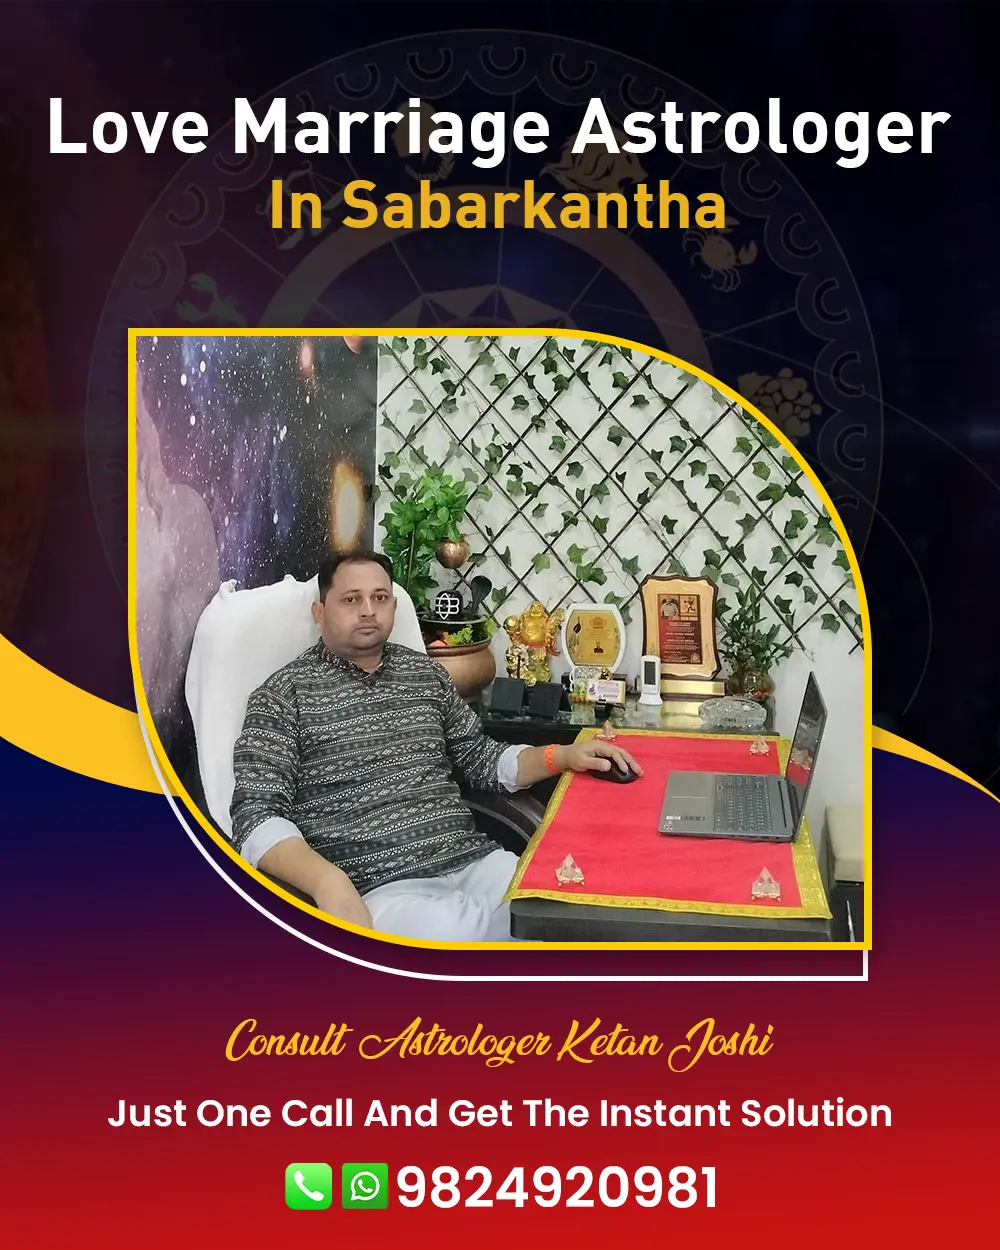 Love Marriage Astrologer In Sabarkantha